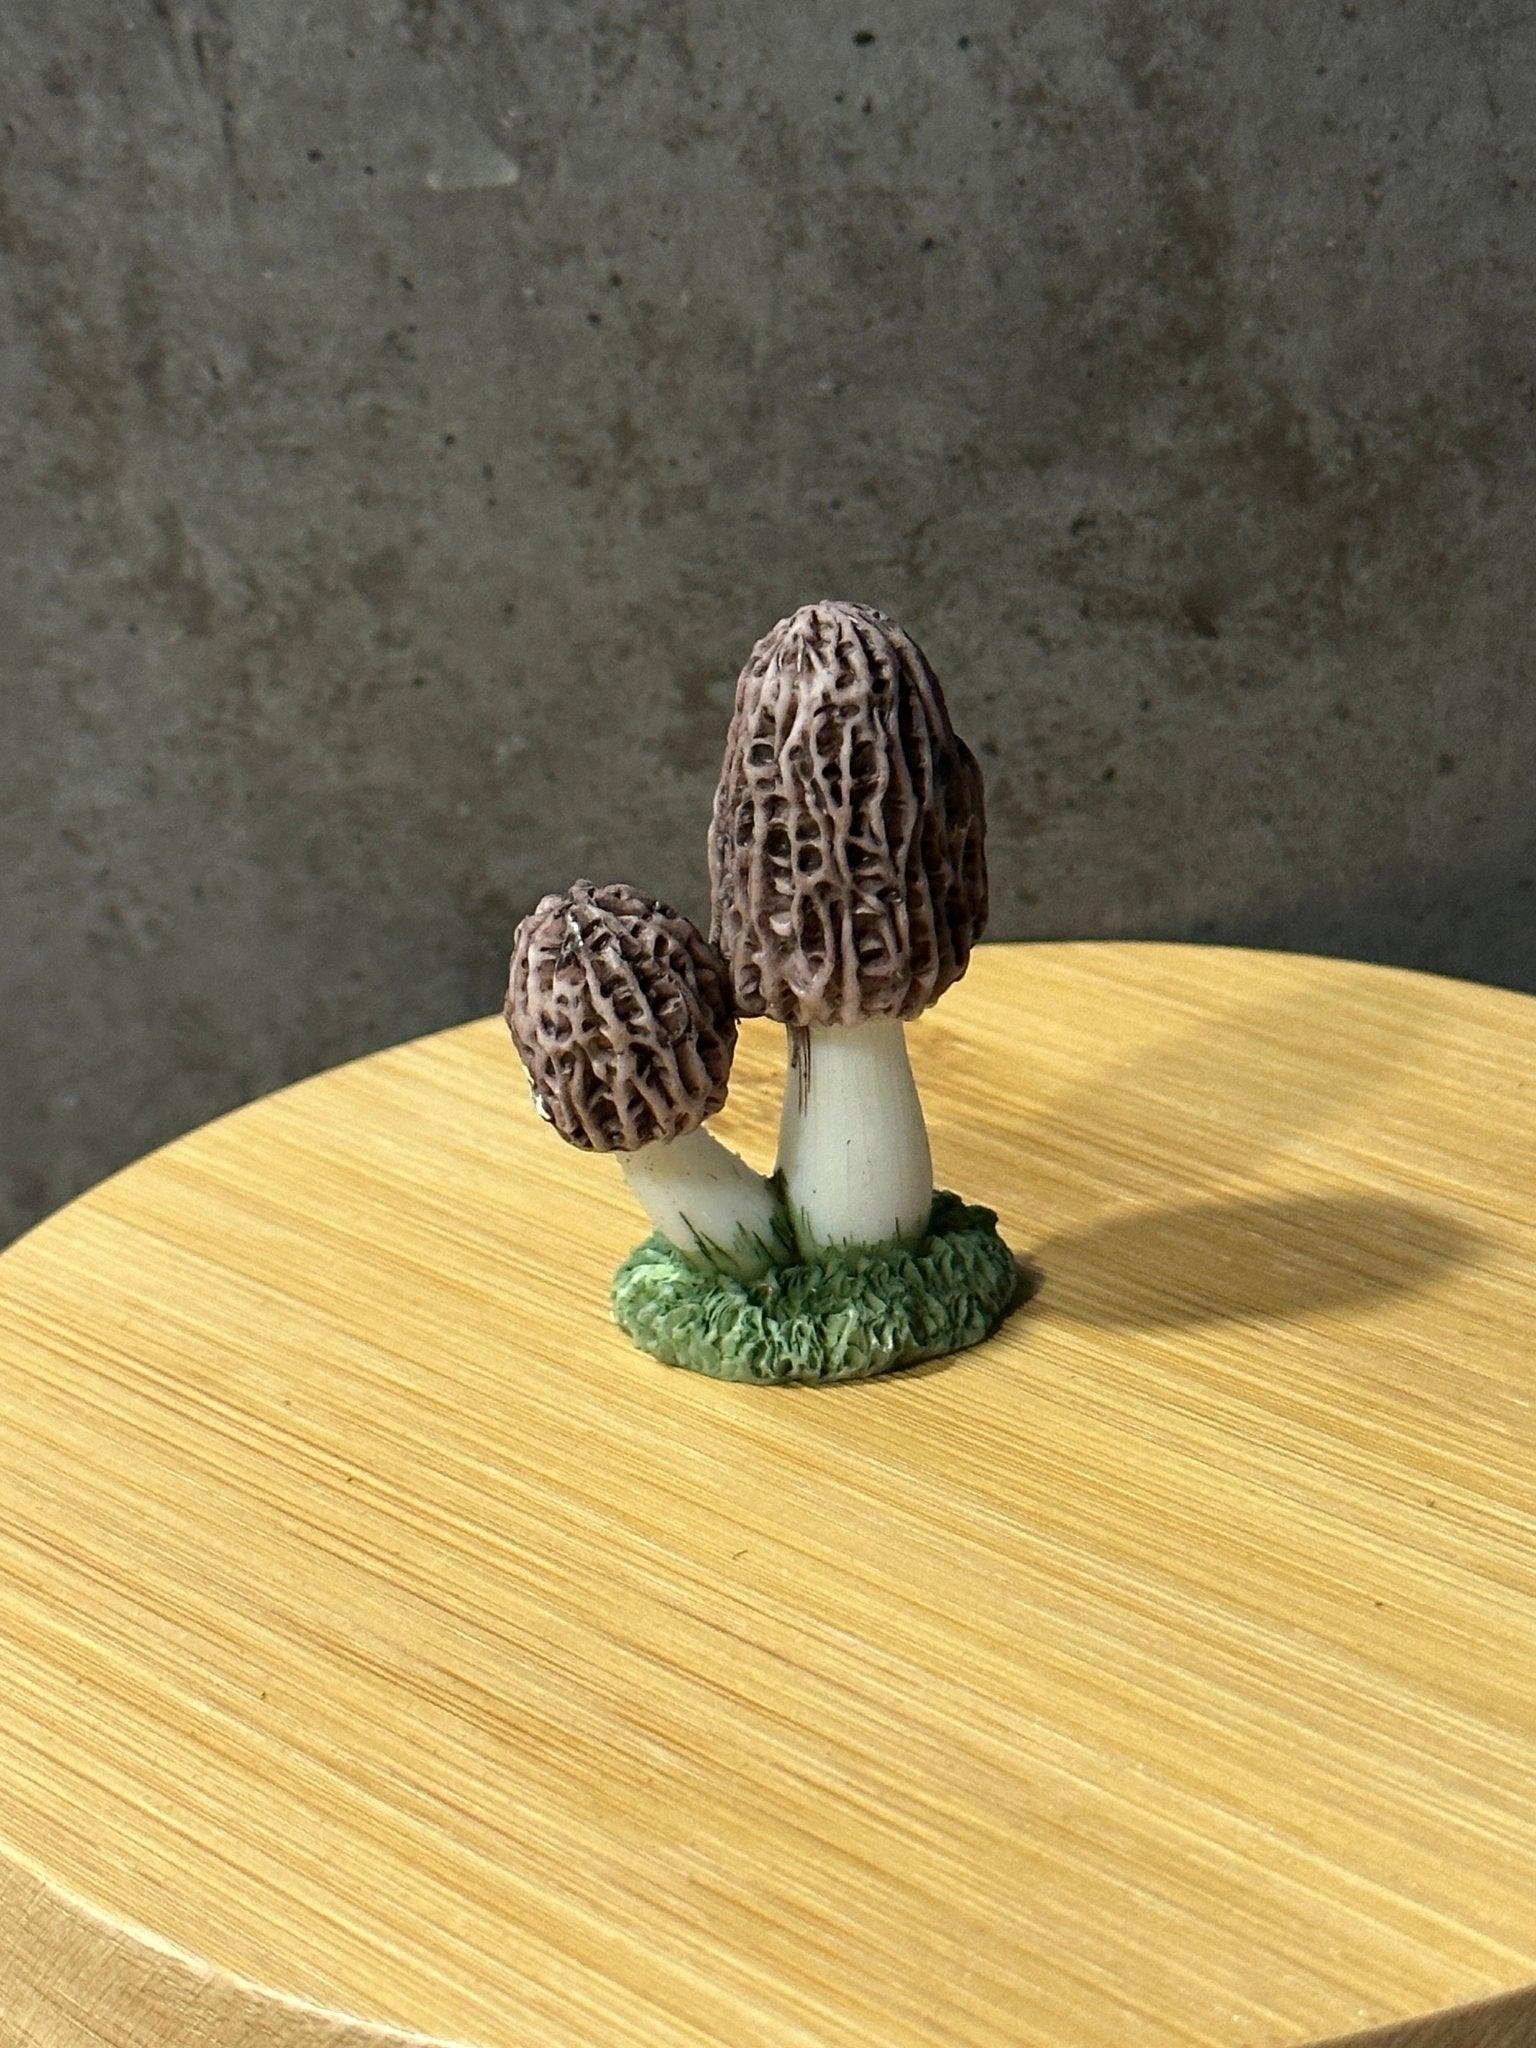 Mushroom Ornament - Halaman Habitat -